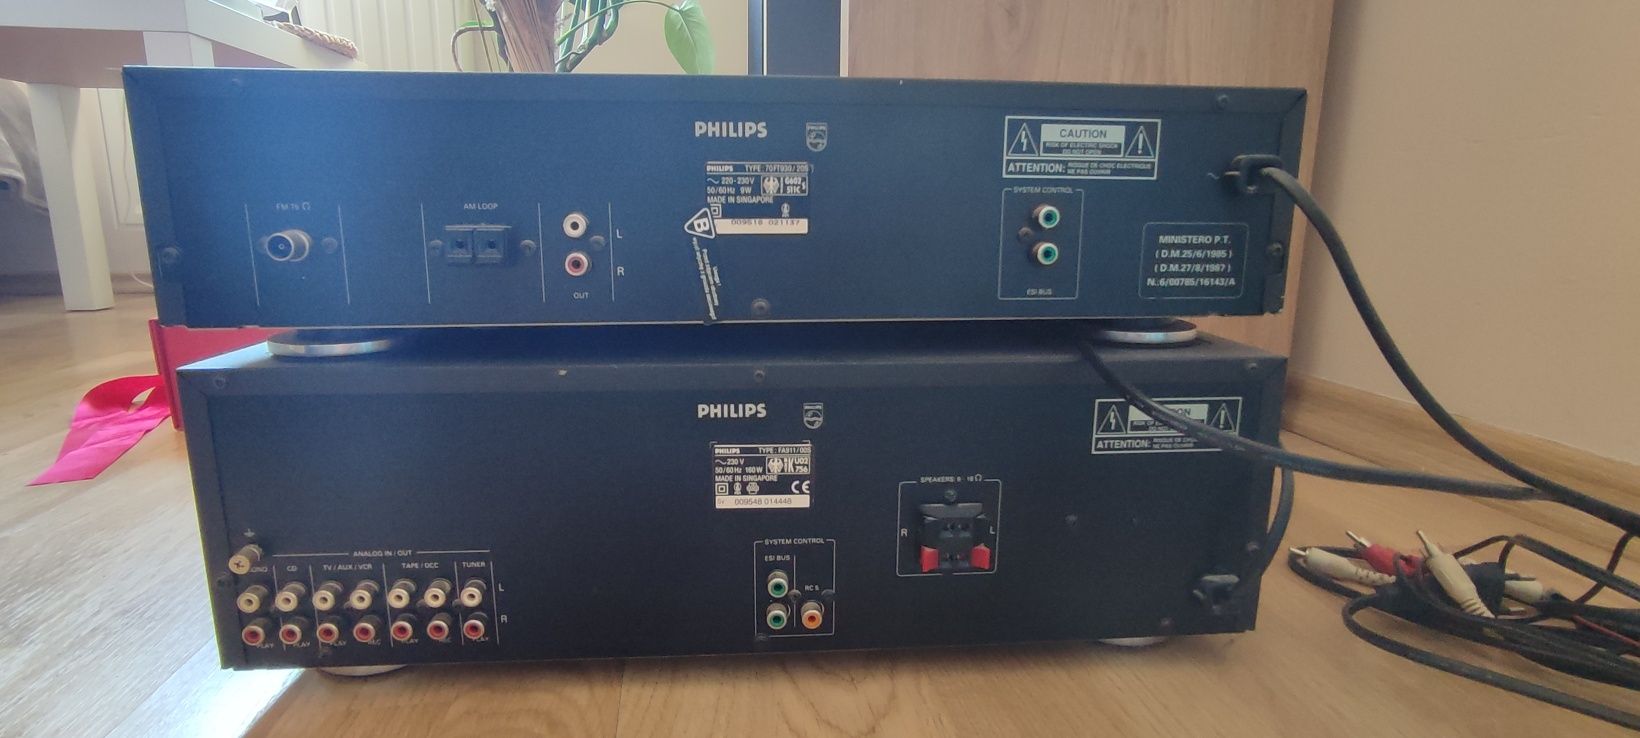 Wzmacniacz Philips FA 911 i tuner Philips 70/FT930